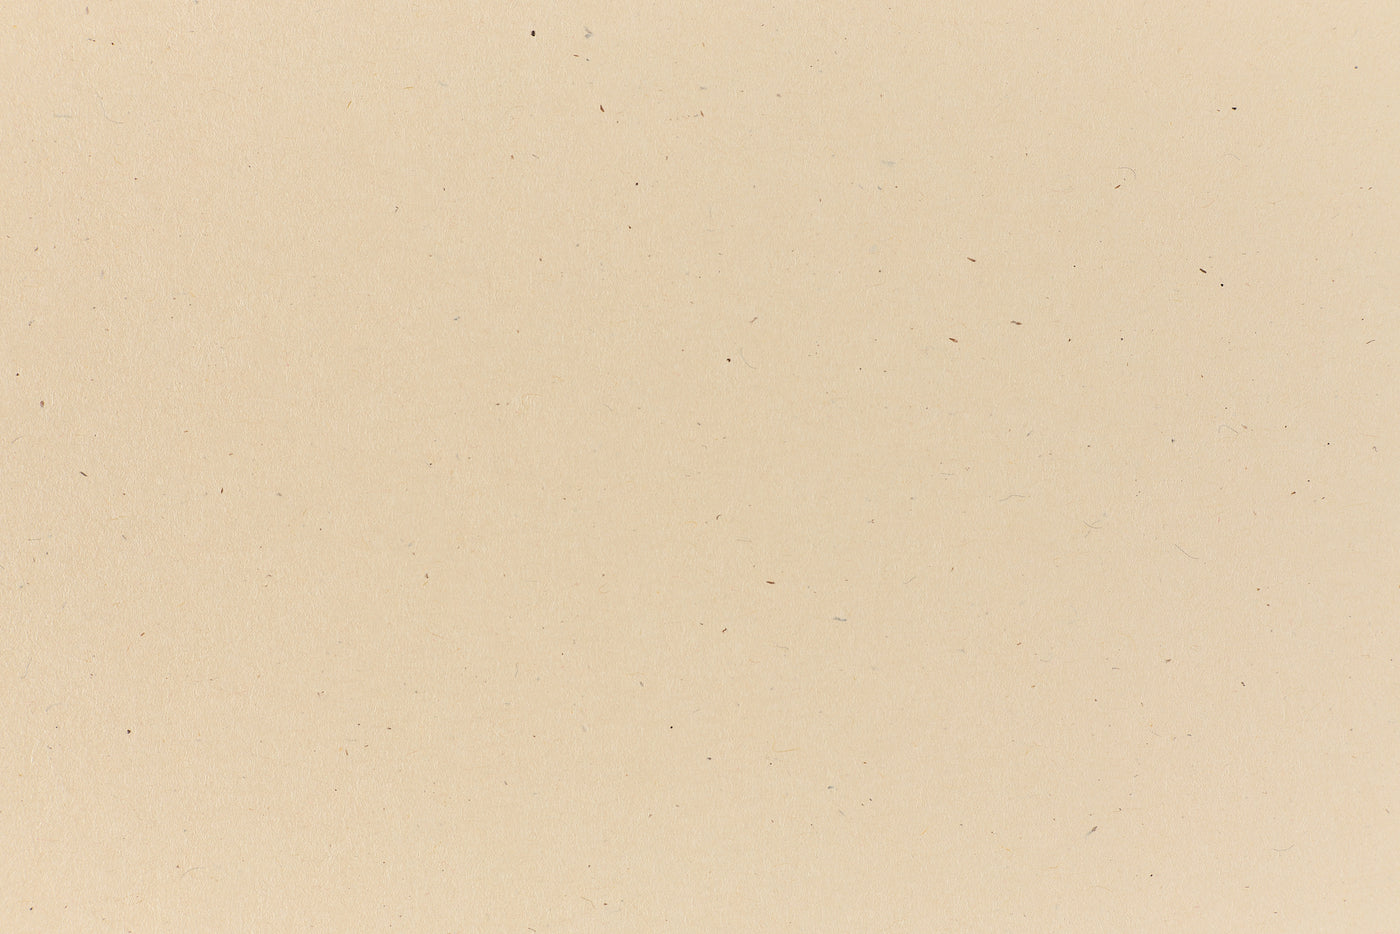 Sand Envelope (Speckletone)